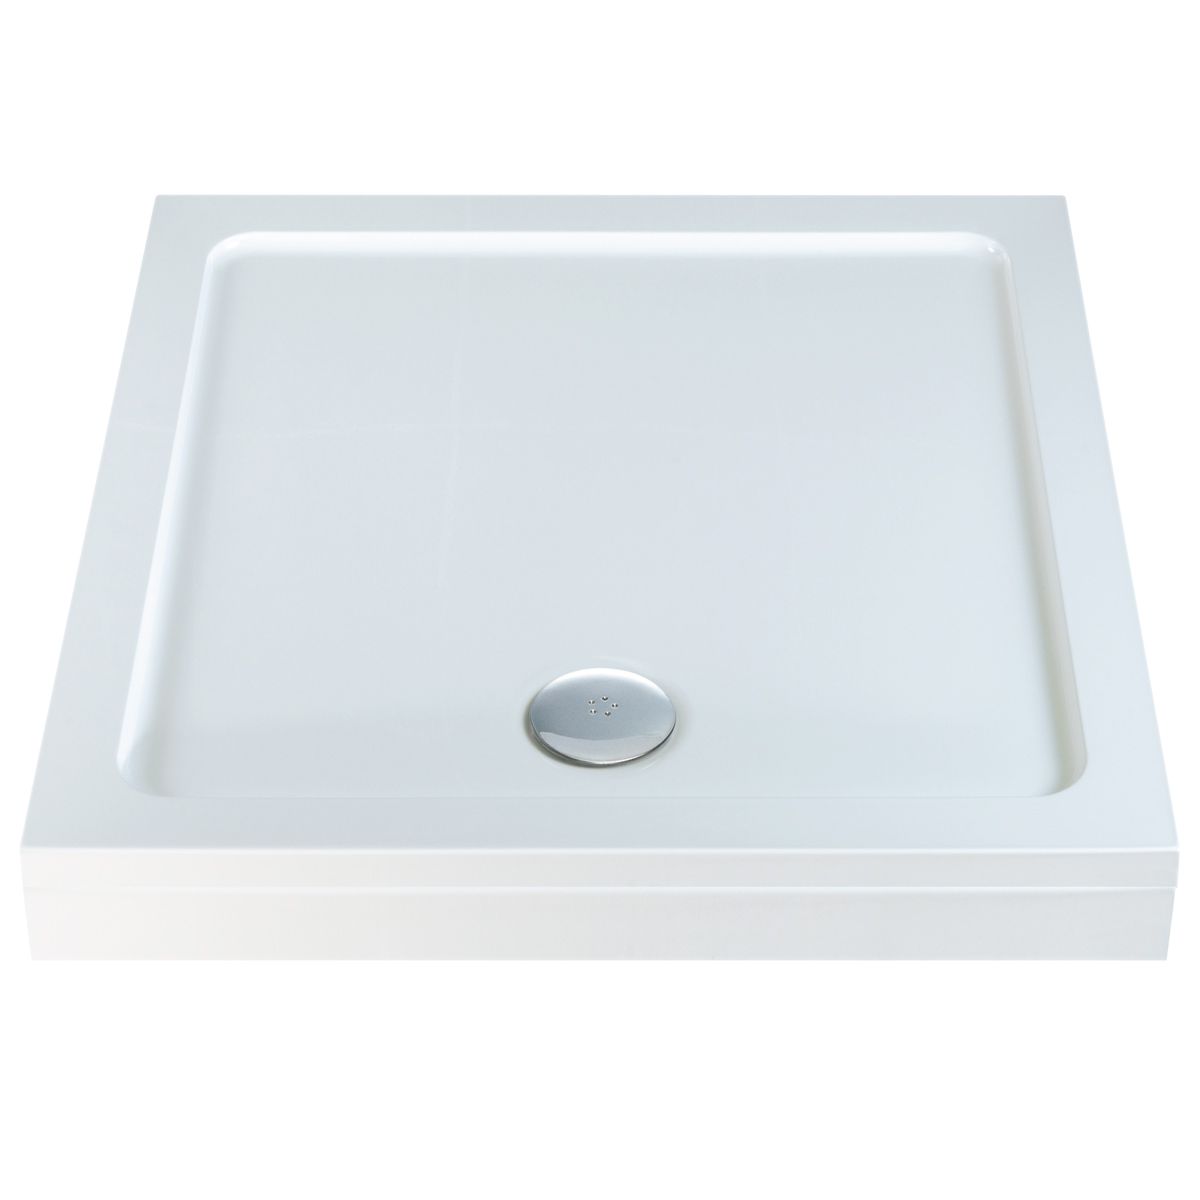 Riser Kit for rectangle square shower enclosure tray J 